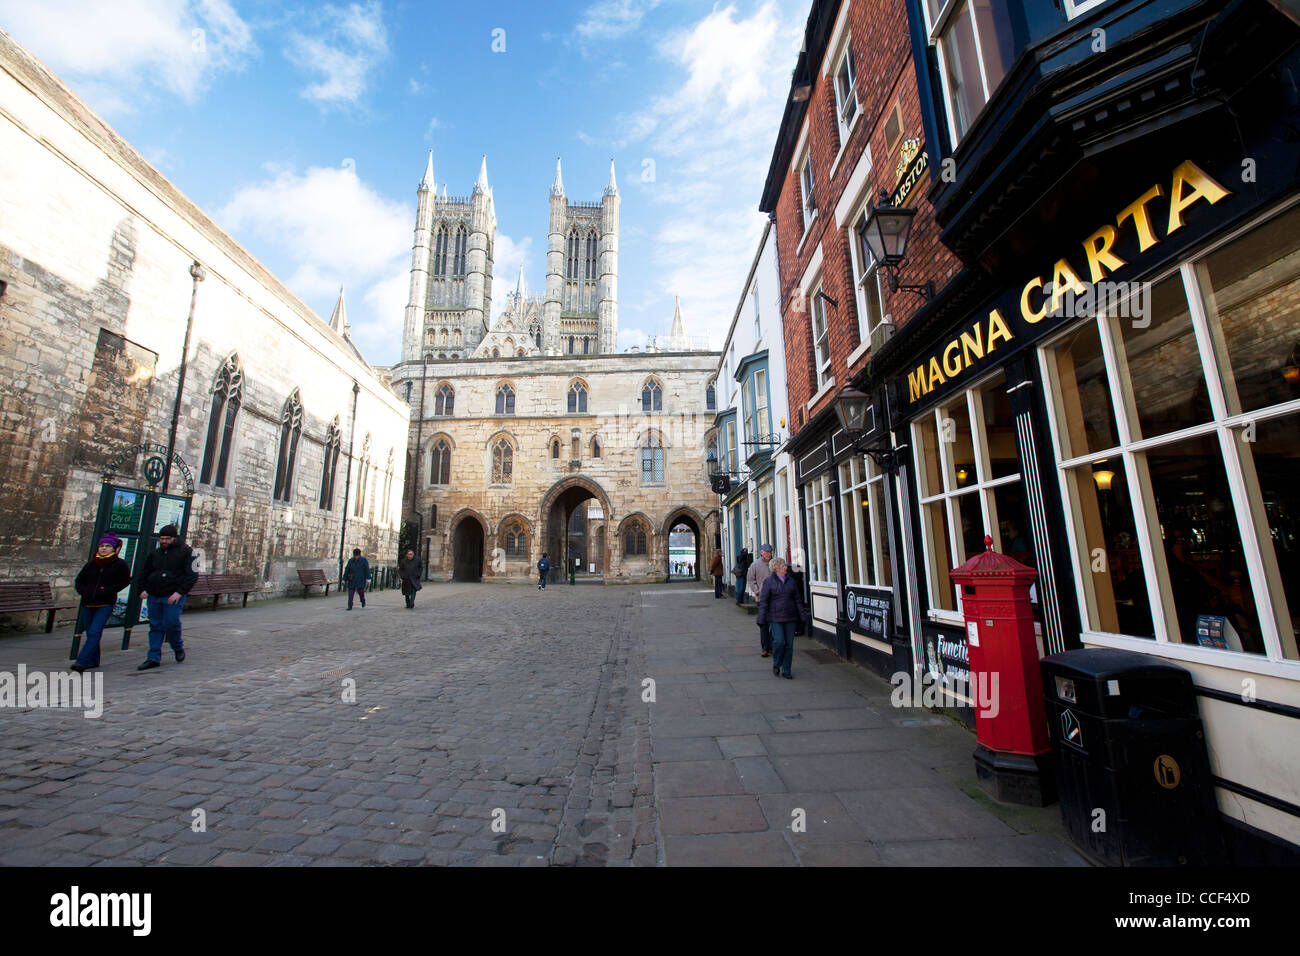 La Ville de Lincoln, Lincolnshire, Angleterre, la cathédrale de Lincoln, monument historique médiéval gothique towers & magna carta pub bar Banque D'Images